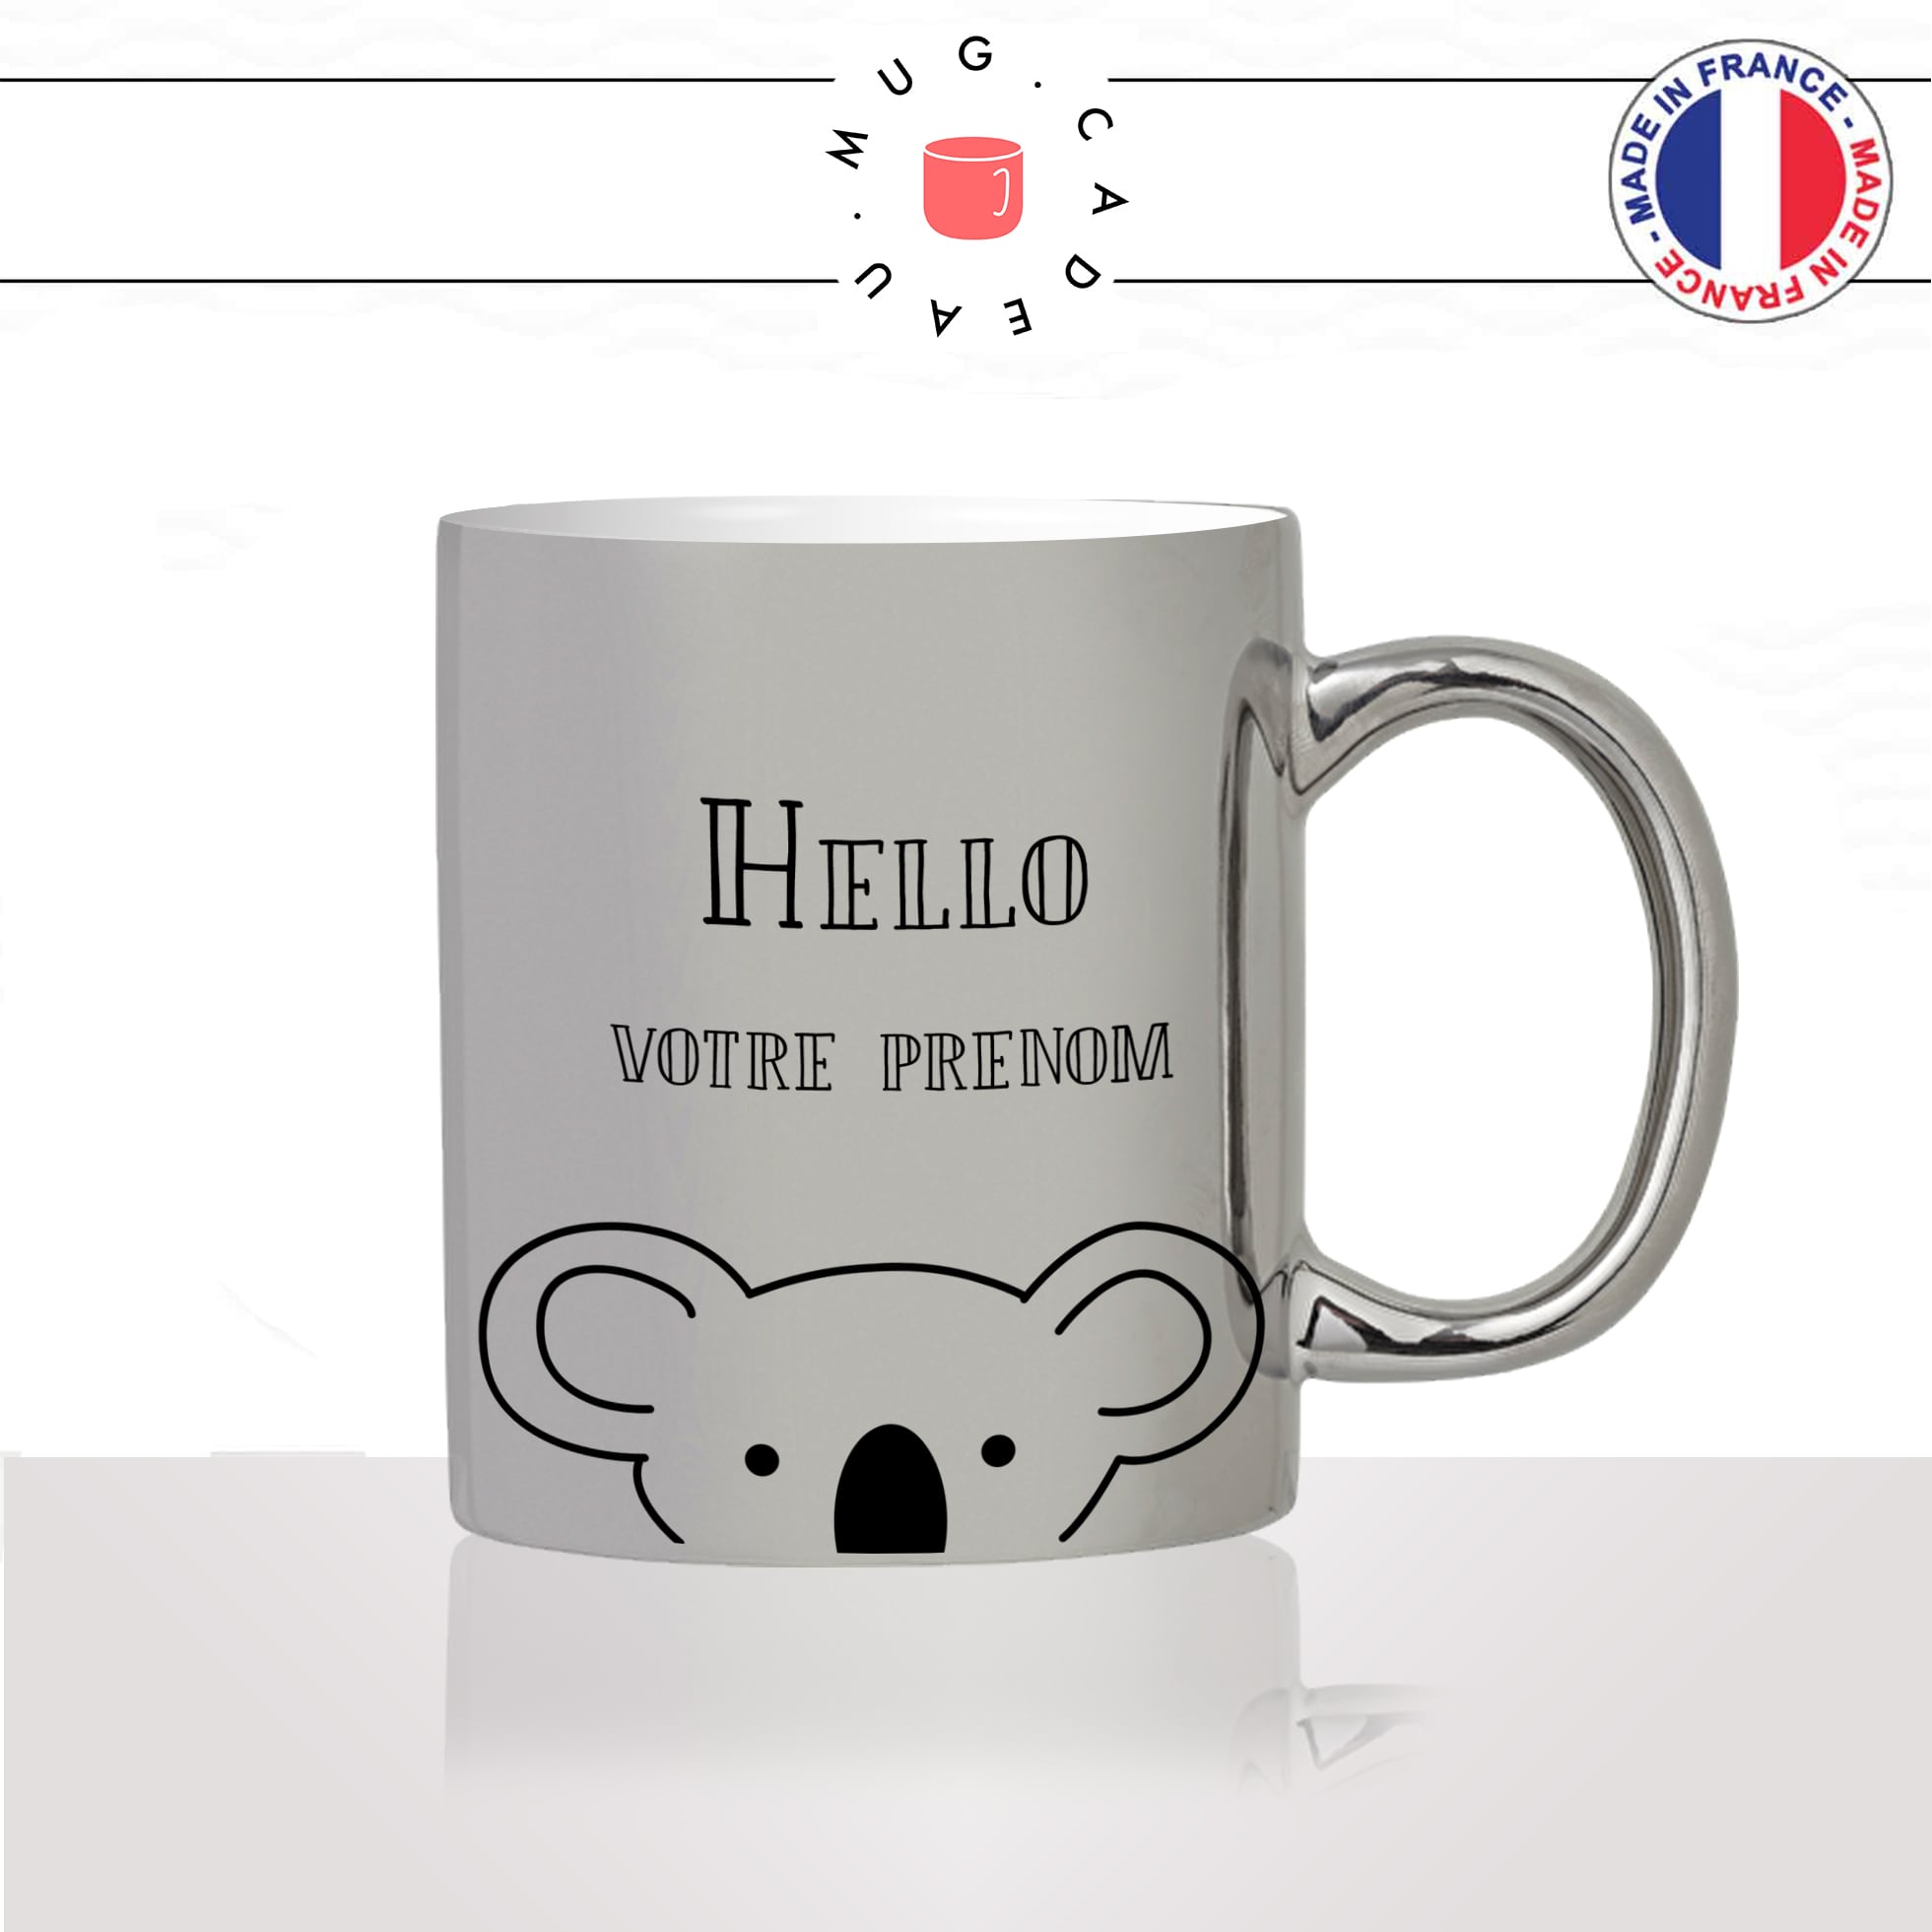 mug-tasse-silver-argenté-koala-hello-bonjour-prénom-personnalisable-drole-mignon-animal-noir-fun-café-thé-idée-cadeau-original-personnalisé2-min